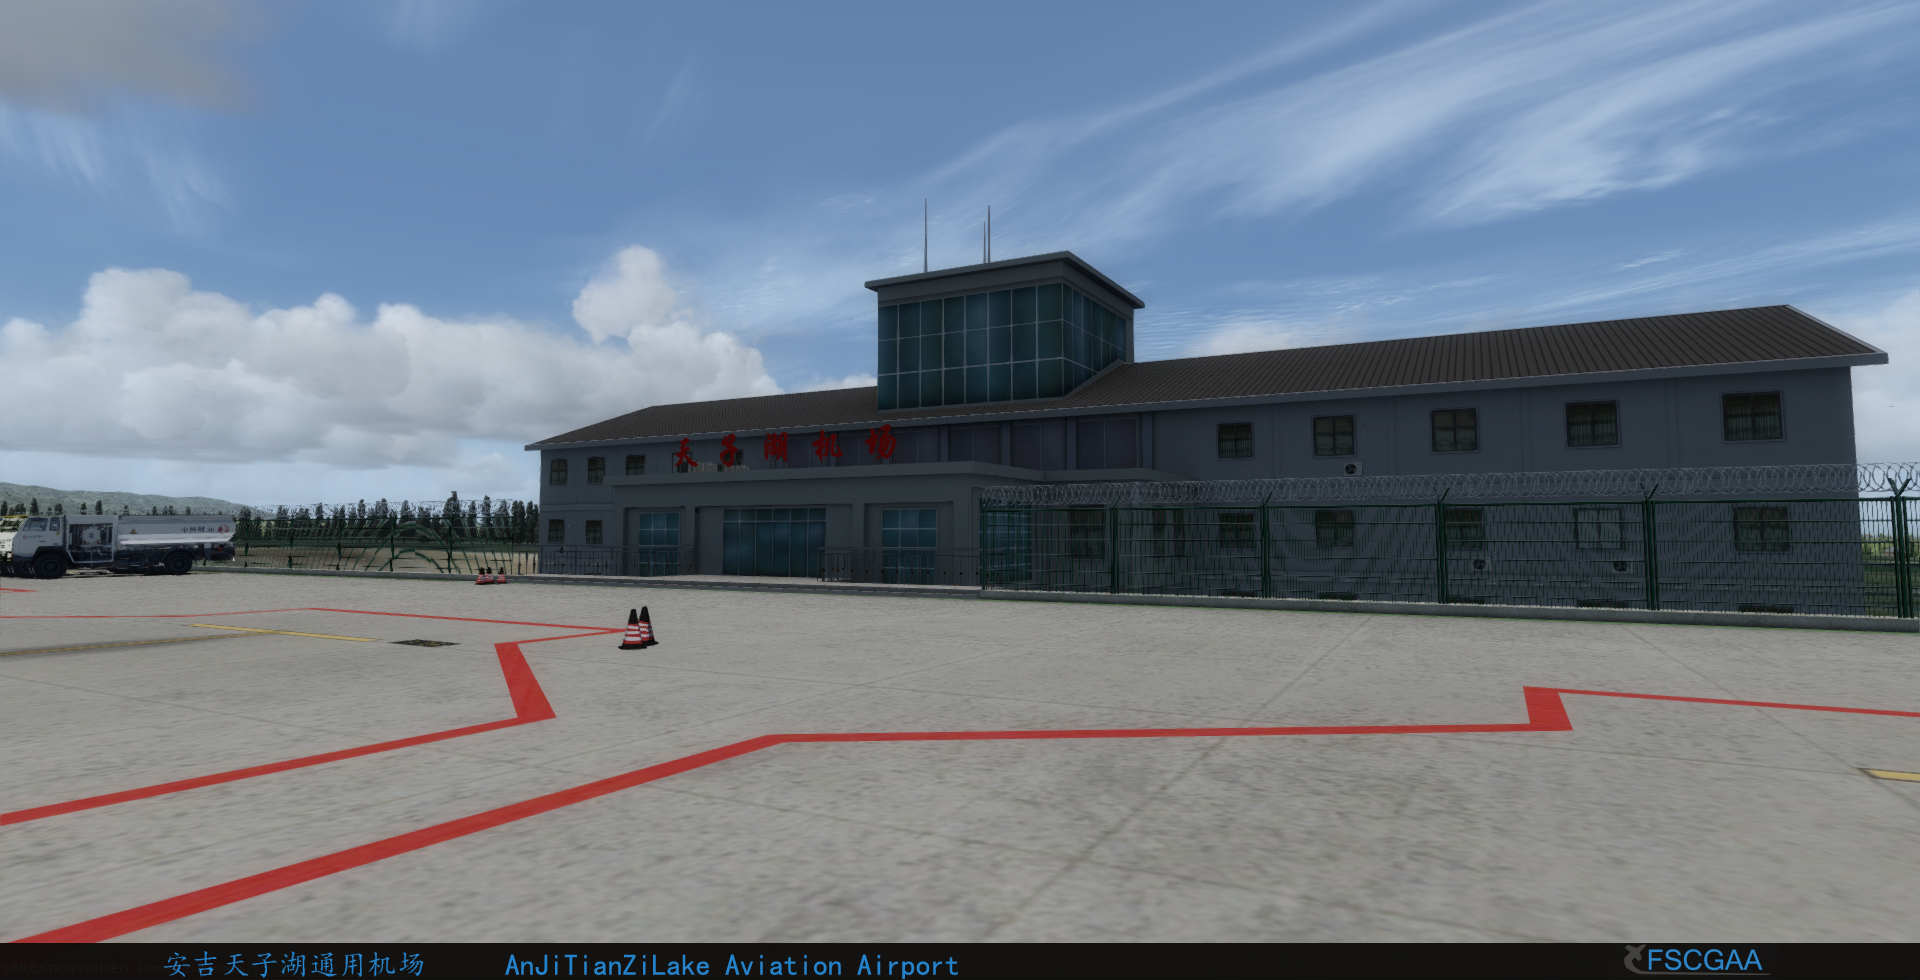 安吉天子湖通航机场 for P3Dv4 发布-2945 